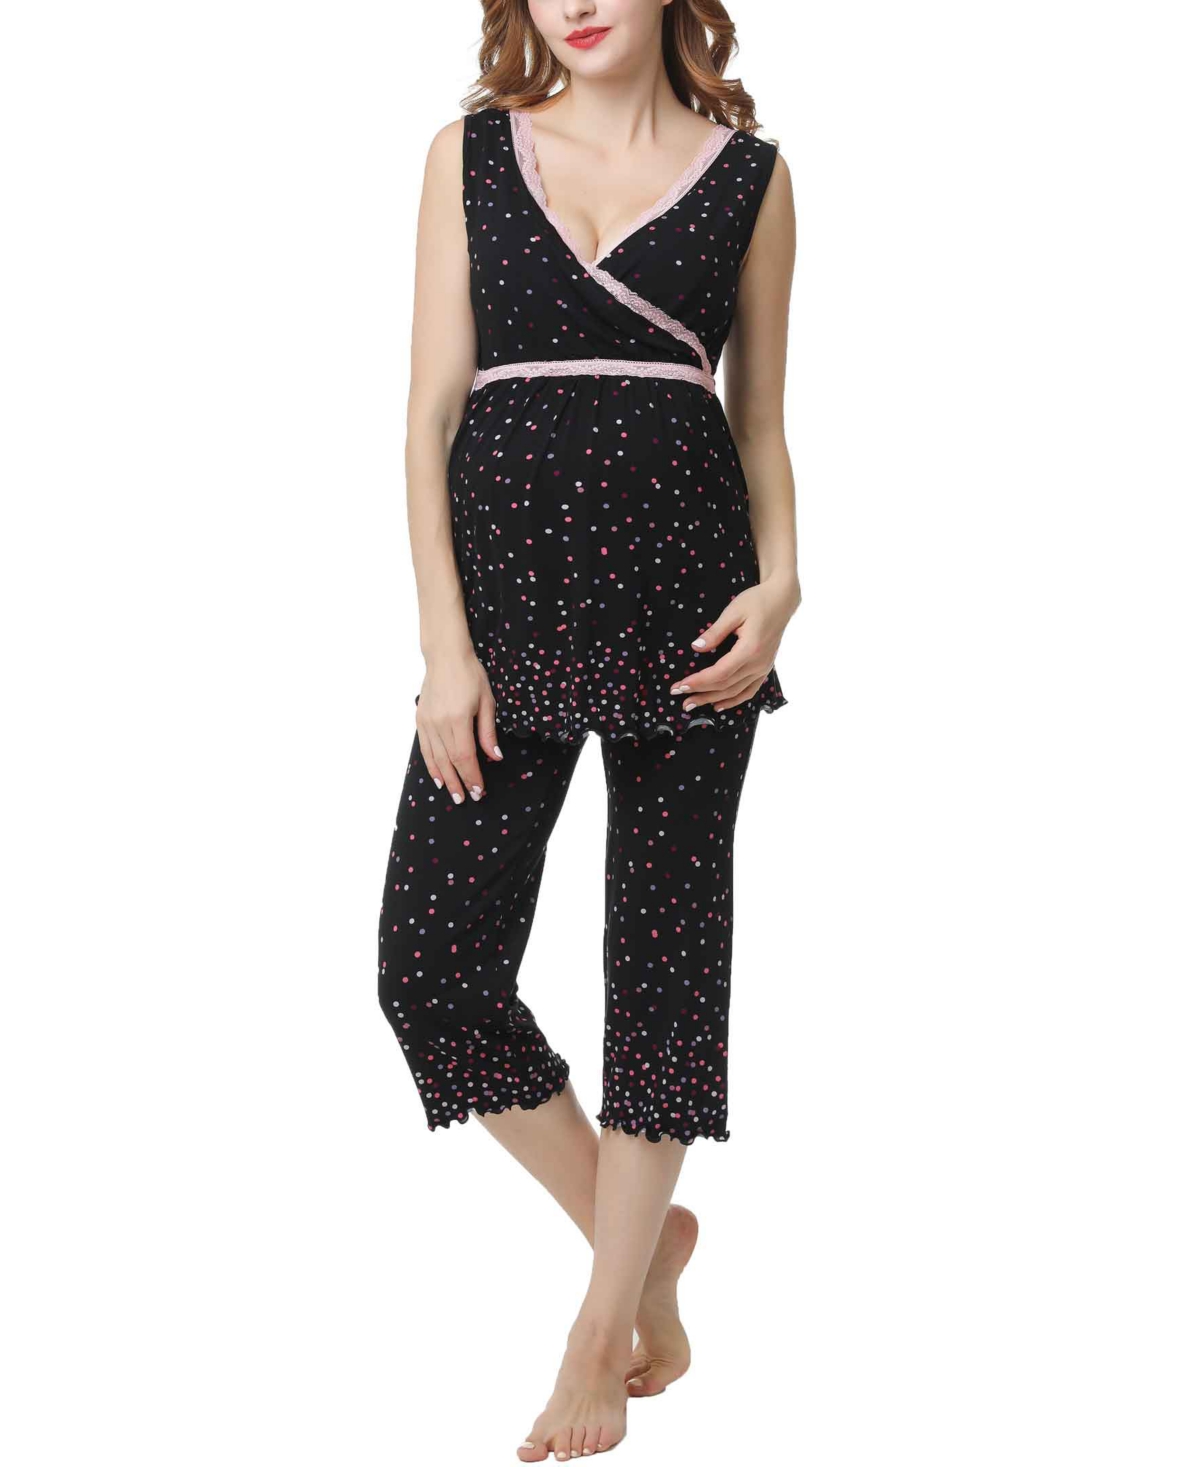 Women's Cindy Maternity & Nursing Pajamas Sleepwear Set